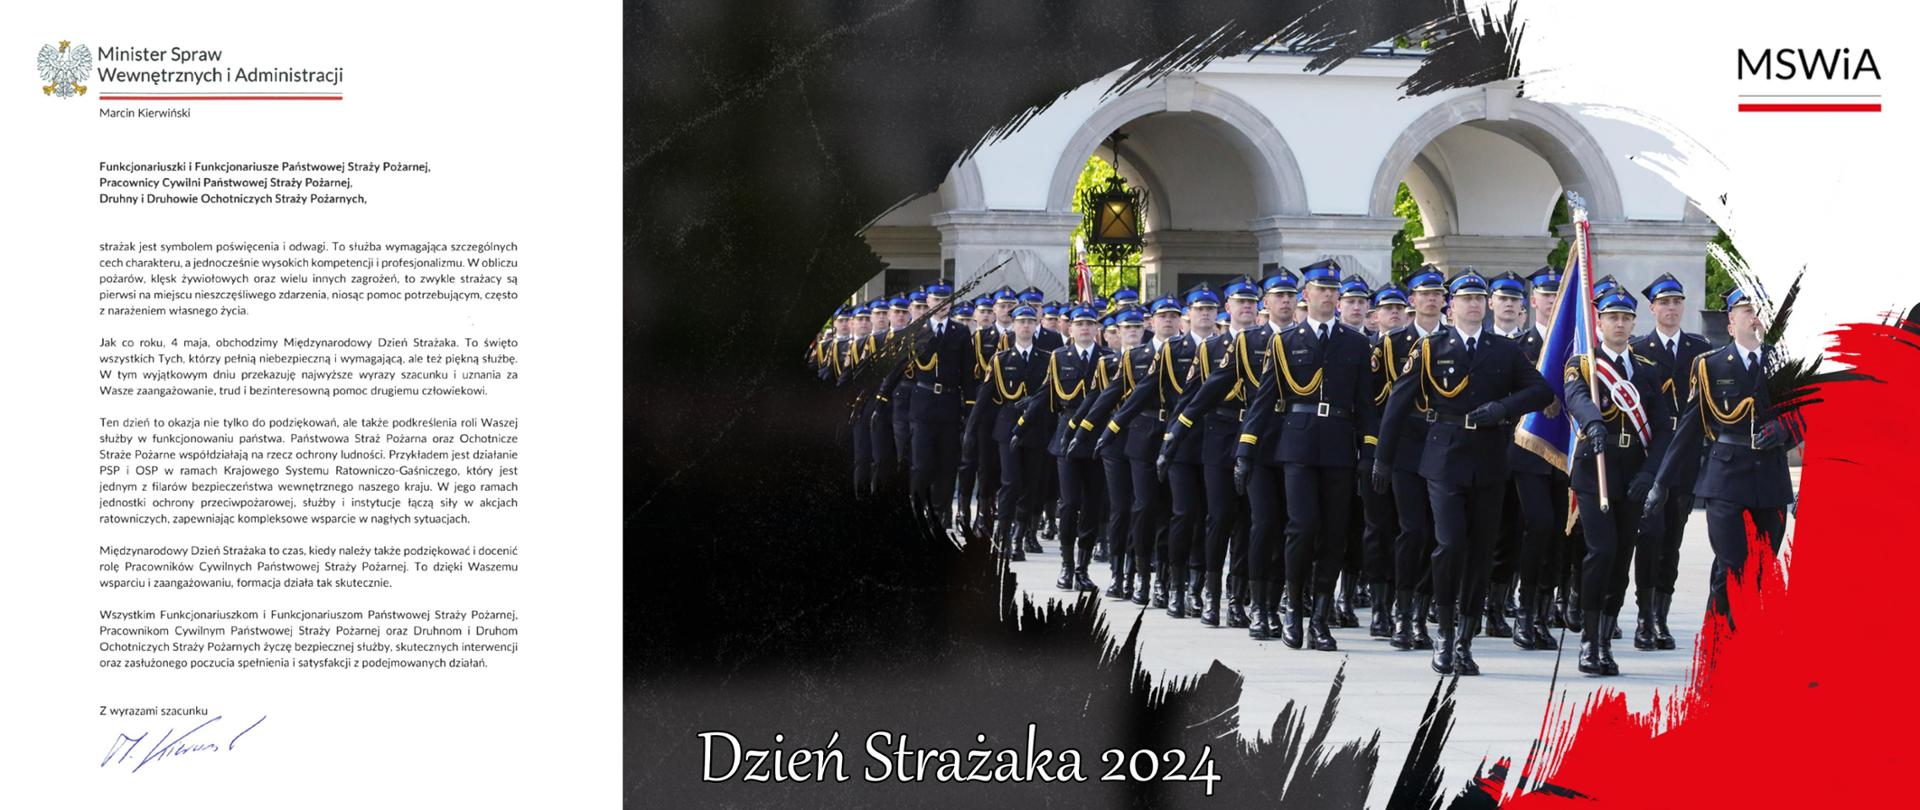 Infografika - tekst i zdjęcie - pododdział strażaków w mundurach galowych maszeruje, w dali za nimi fragment Pałacu Saskiego